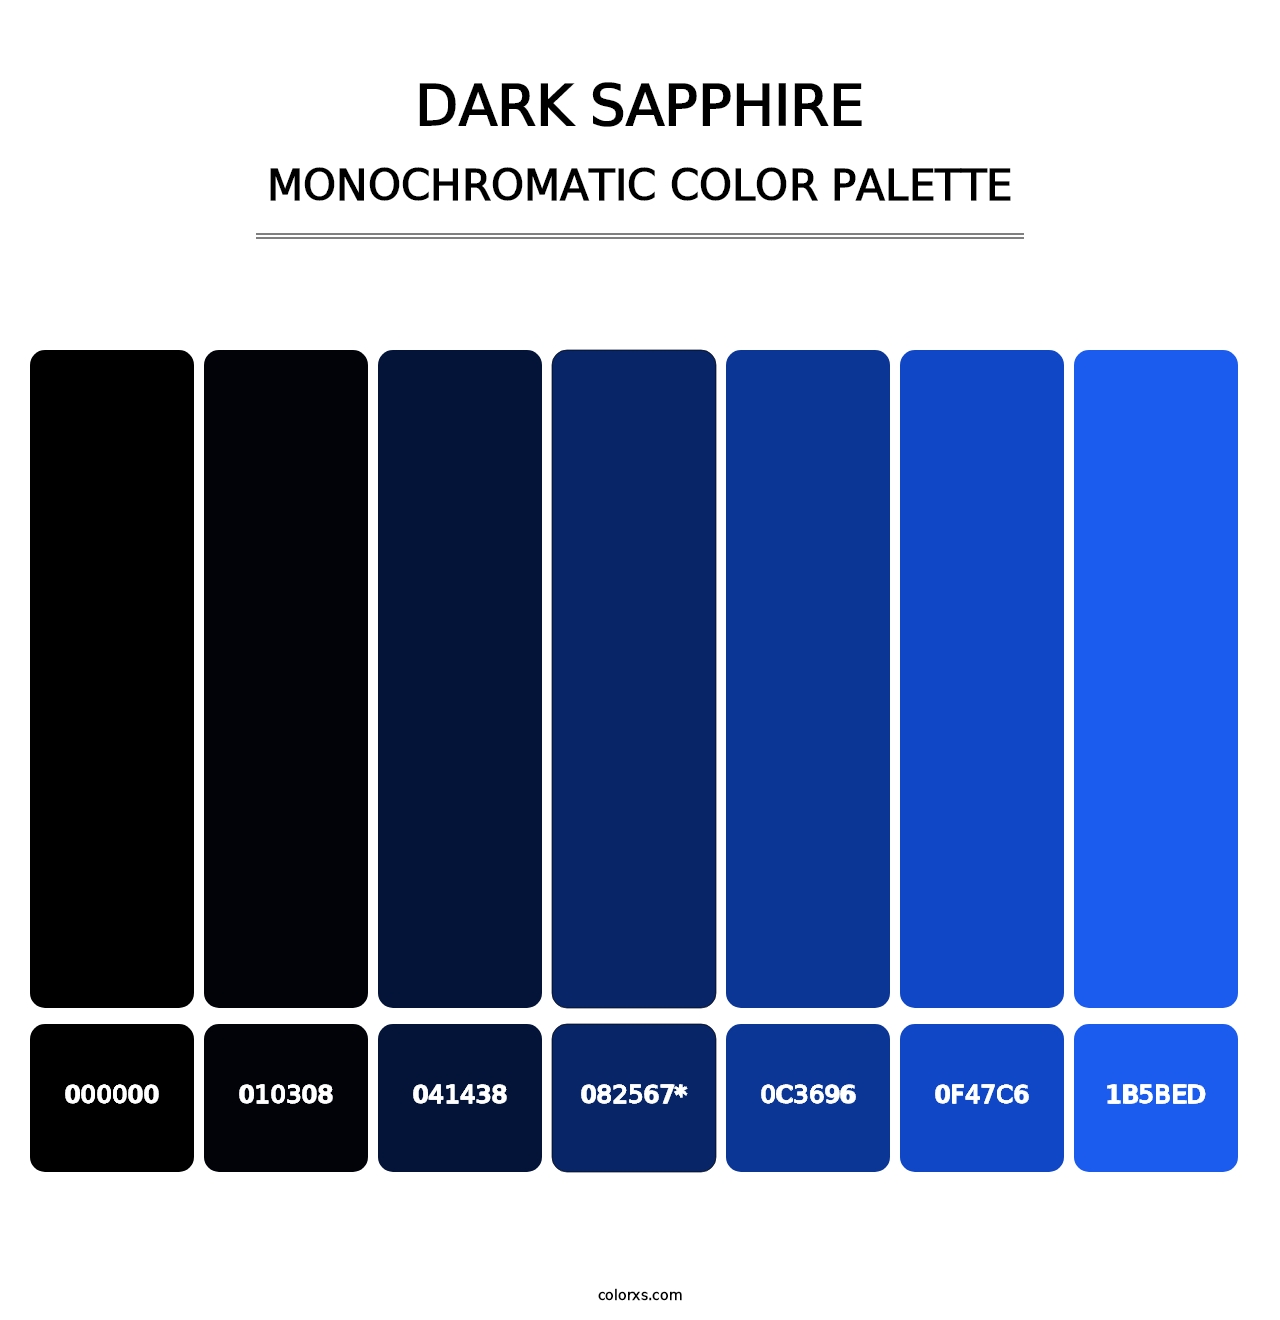 Dark Sapphire - Monochromatic Color Palette